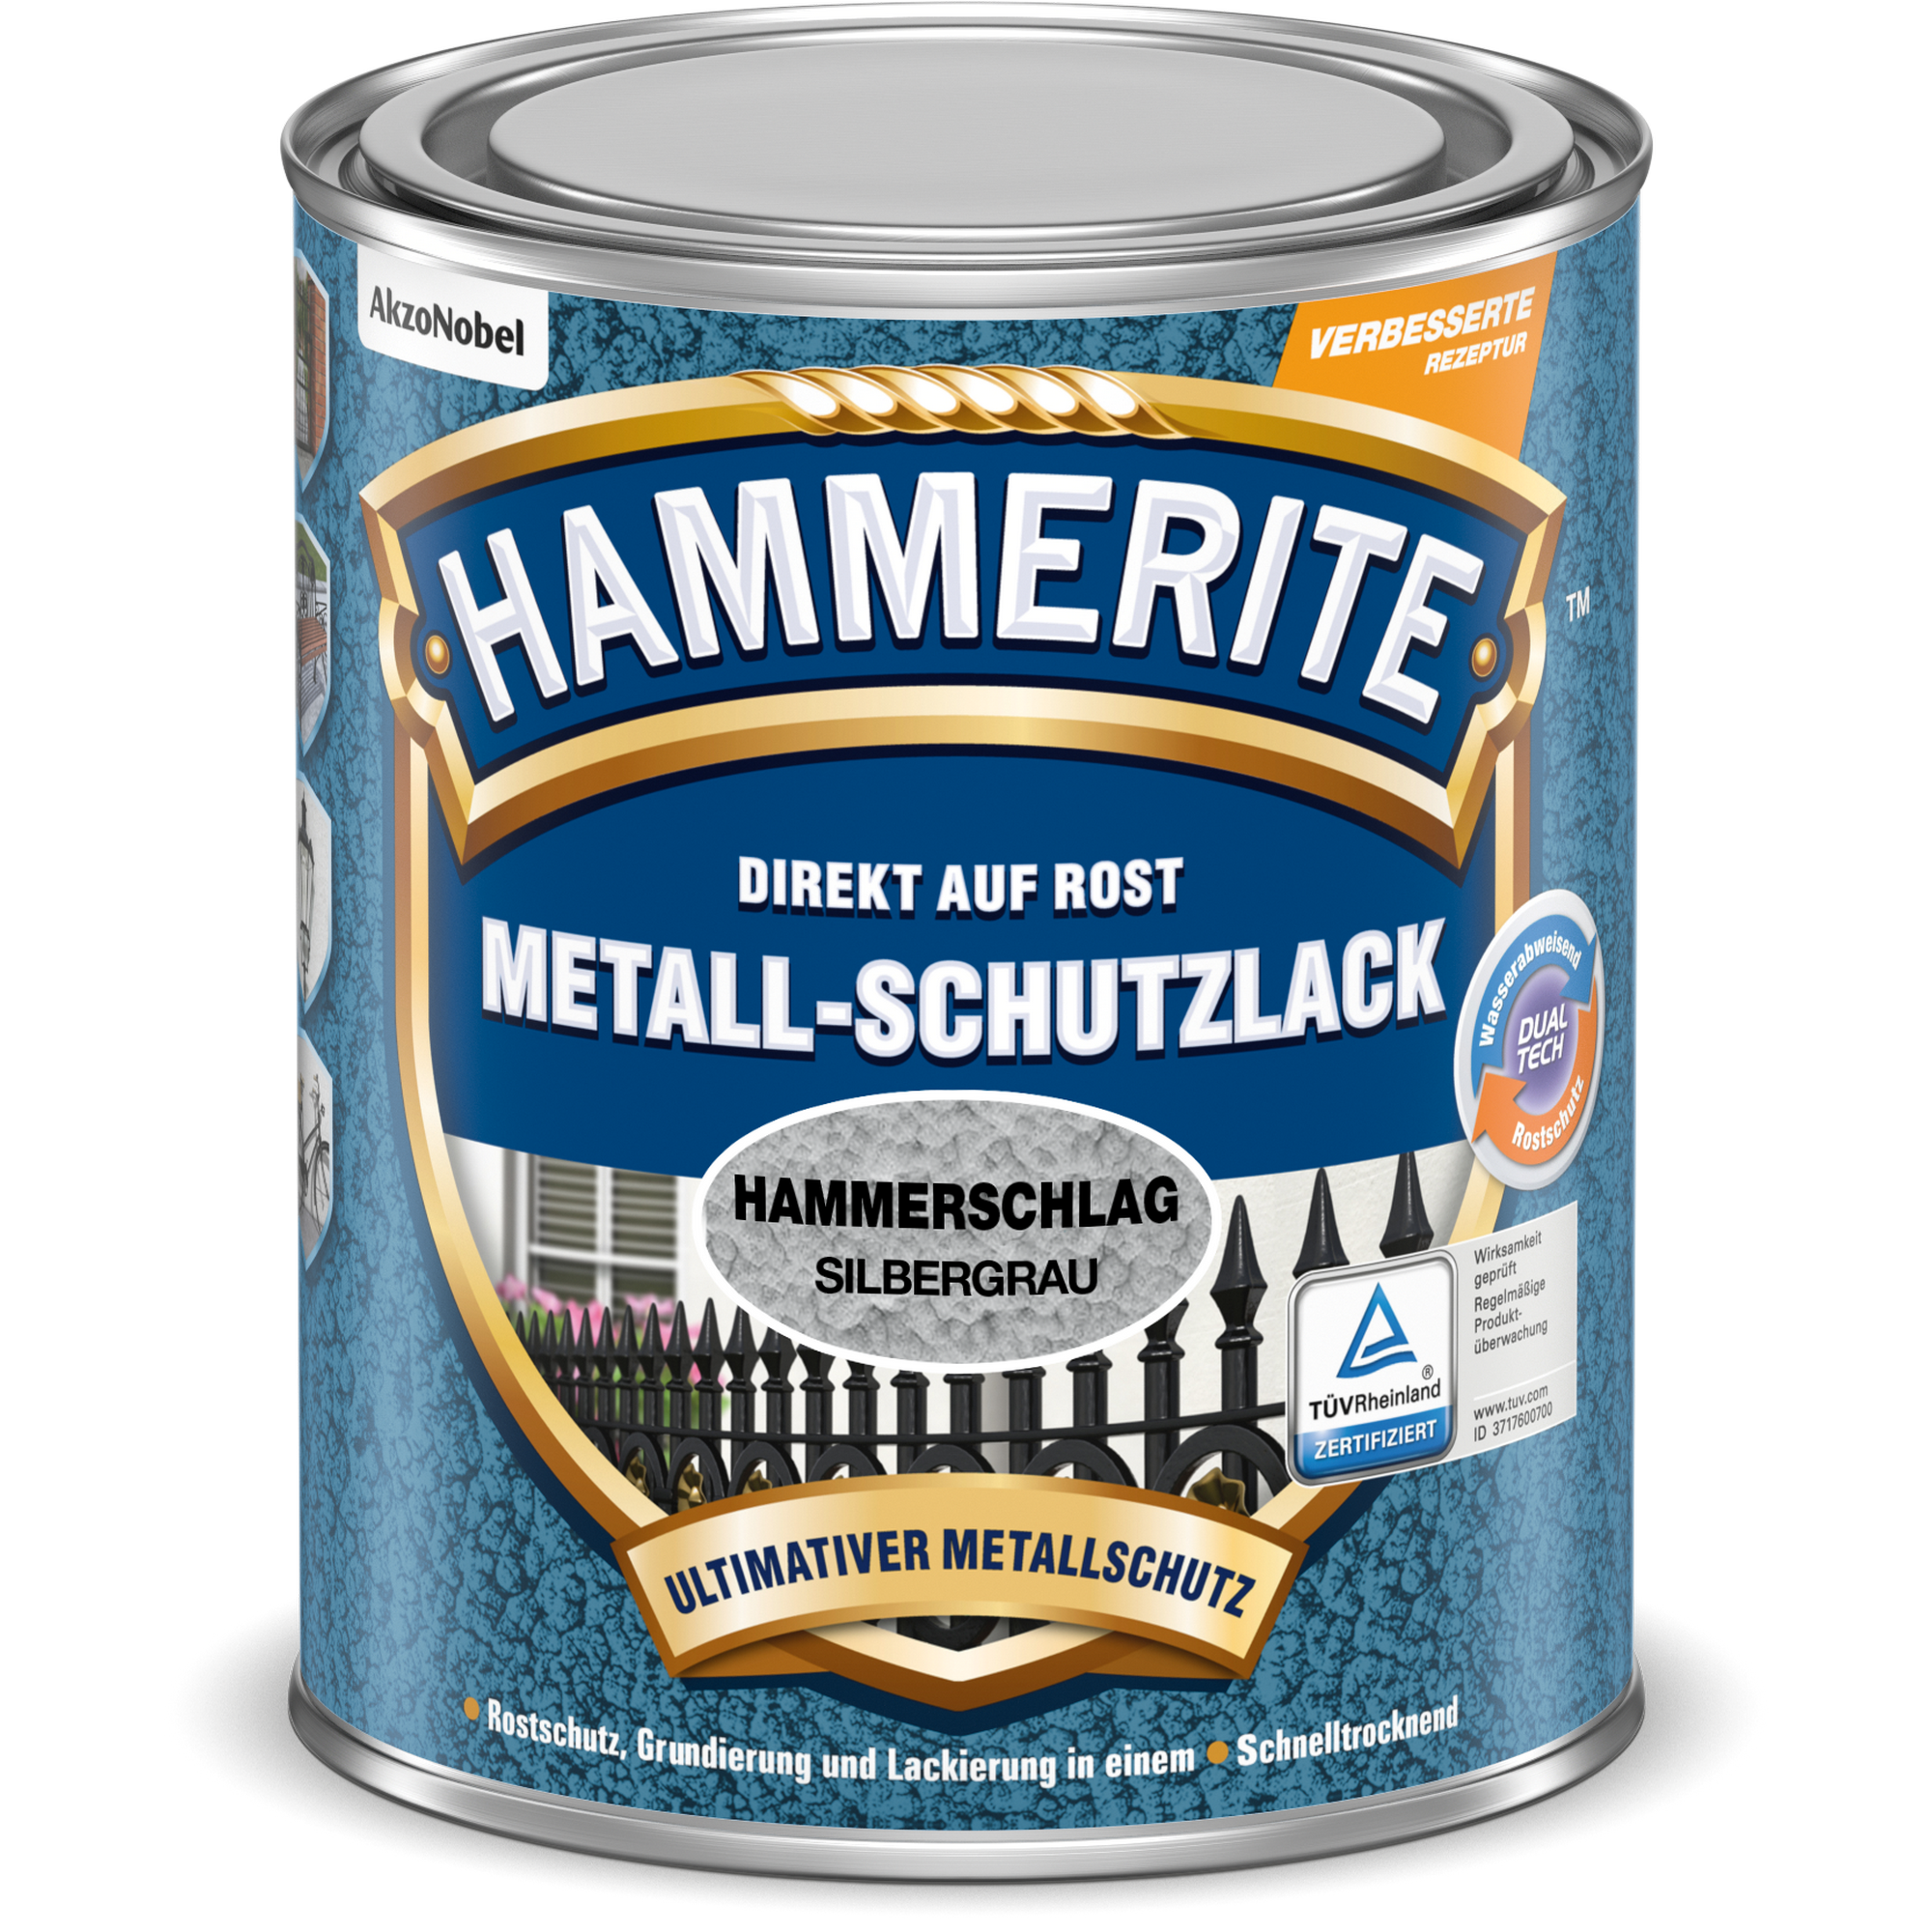 Metallschutzlack Hammerschlag-Effekt silbergrau 750 ml + product picture